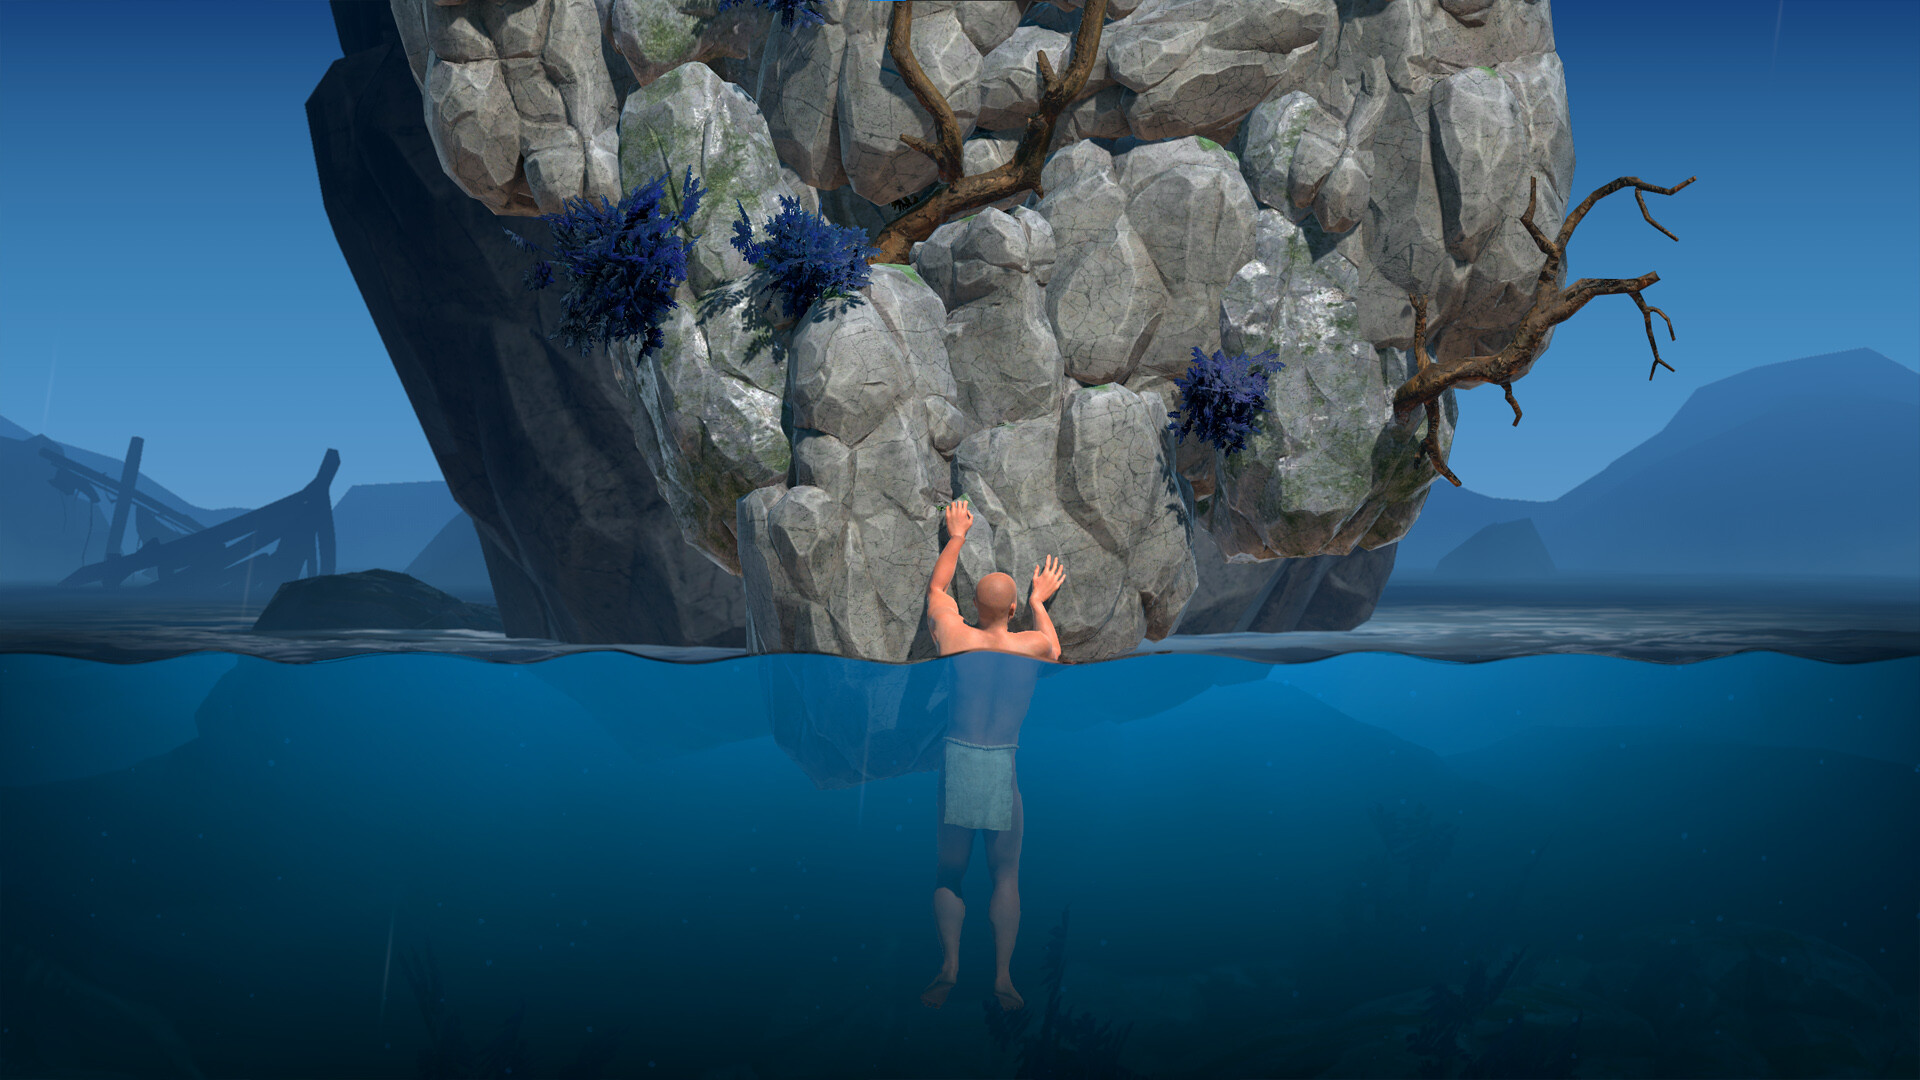 掘地求生风格游戏《一款关于攀岩的困难游戏》预告片发布